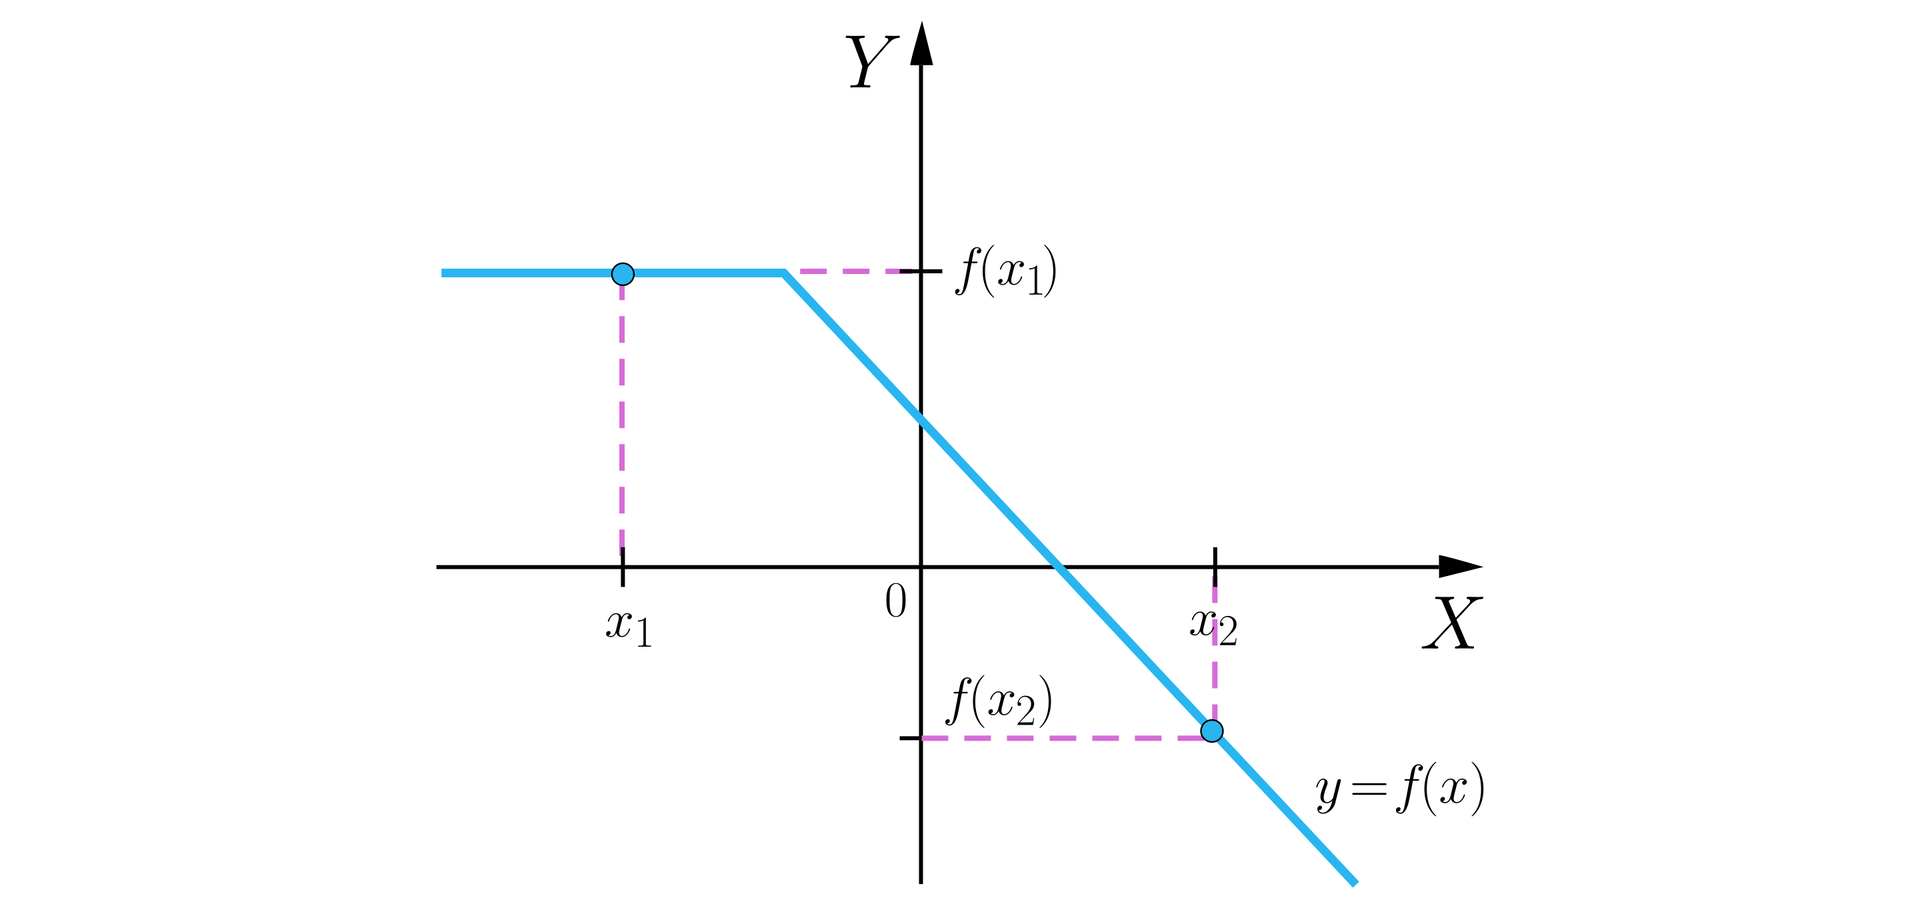 Ilustracja przedstawia układ współrzędnych z poziomą osią X oraz z pionową osią Y. Na płaszczyźnie narysowano wykres nierosnącej funkcji. Od minus nieskończoności wykres jest poziomą półprostą o końcu w drugiej ćwiartce. Koniec ten jest również końcem ukośnej półprostej, która jest dalszą częścią wykresu i biegnie przez kawałek drugiej, pierwszej i czwartej ćwiartki.  Na wykresie wyróżniono zamalowanymi kółkami dwa punkty i zrzutowano je na obie osie. Punkt pierwszy znajduje się w drugiej ćwiartce na poziomej półprostej i ma współrzędne x1;fx1, przy czym współrzędna x1 zrzutowana jest za pomocą pionowej przerywanej linii biegnącej od punktu do ujemnej półosi OX, a współrzędna fx1 zrzutowana jest za pomocą poziomej linii biegnącej od punktu do dodatniej półosi OY.  Punkt drugi znajduje się na ukośnej półprostej, jest położony w czwartej ćwiartce i ma współrzędne x2;fx2, przy czym współrzędna x2 zrzutowana jest za pomocą pionowej przerywanej linii biegnącej od punktu do dodatniej półosi OX, a współrzędna fx2 zrzutowana jest za pomocą poziomej linii biegnącej od punktu do ujemnej półosi OY. Relacje między wpółrzędnymi punktów są natępujące: argumenty: x1&lt;x2 oraz wartości: fx1&gt;fx2.